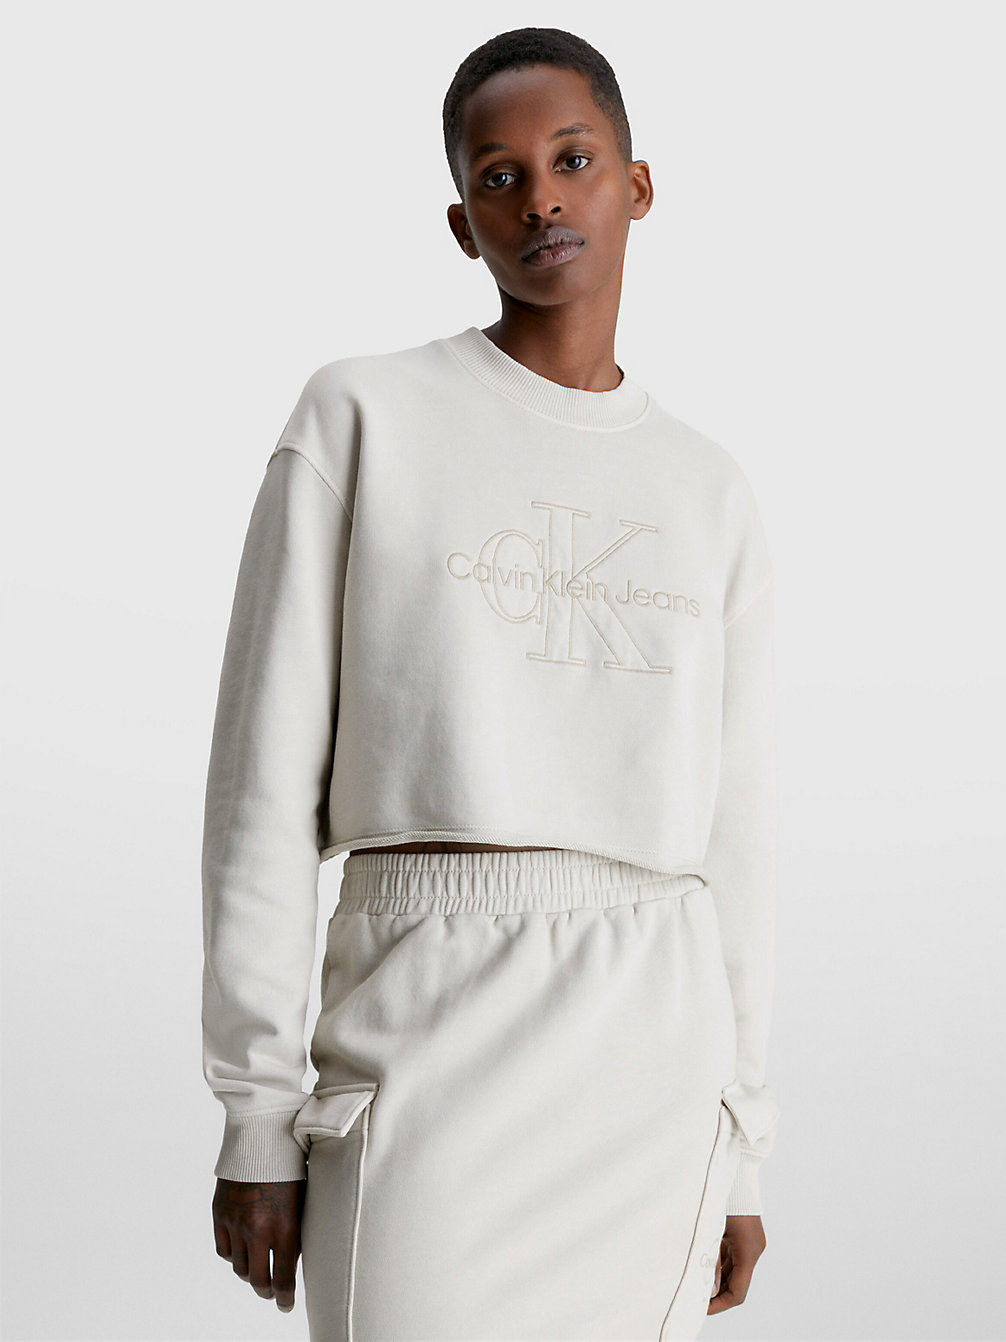 CLASSIC BEIGE Cropped Embroidered Sweatshirt undefined women Calvin Klein